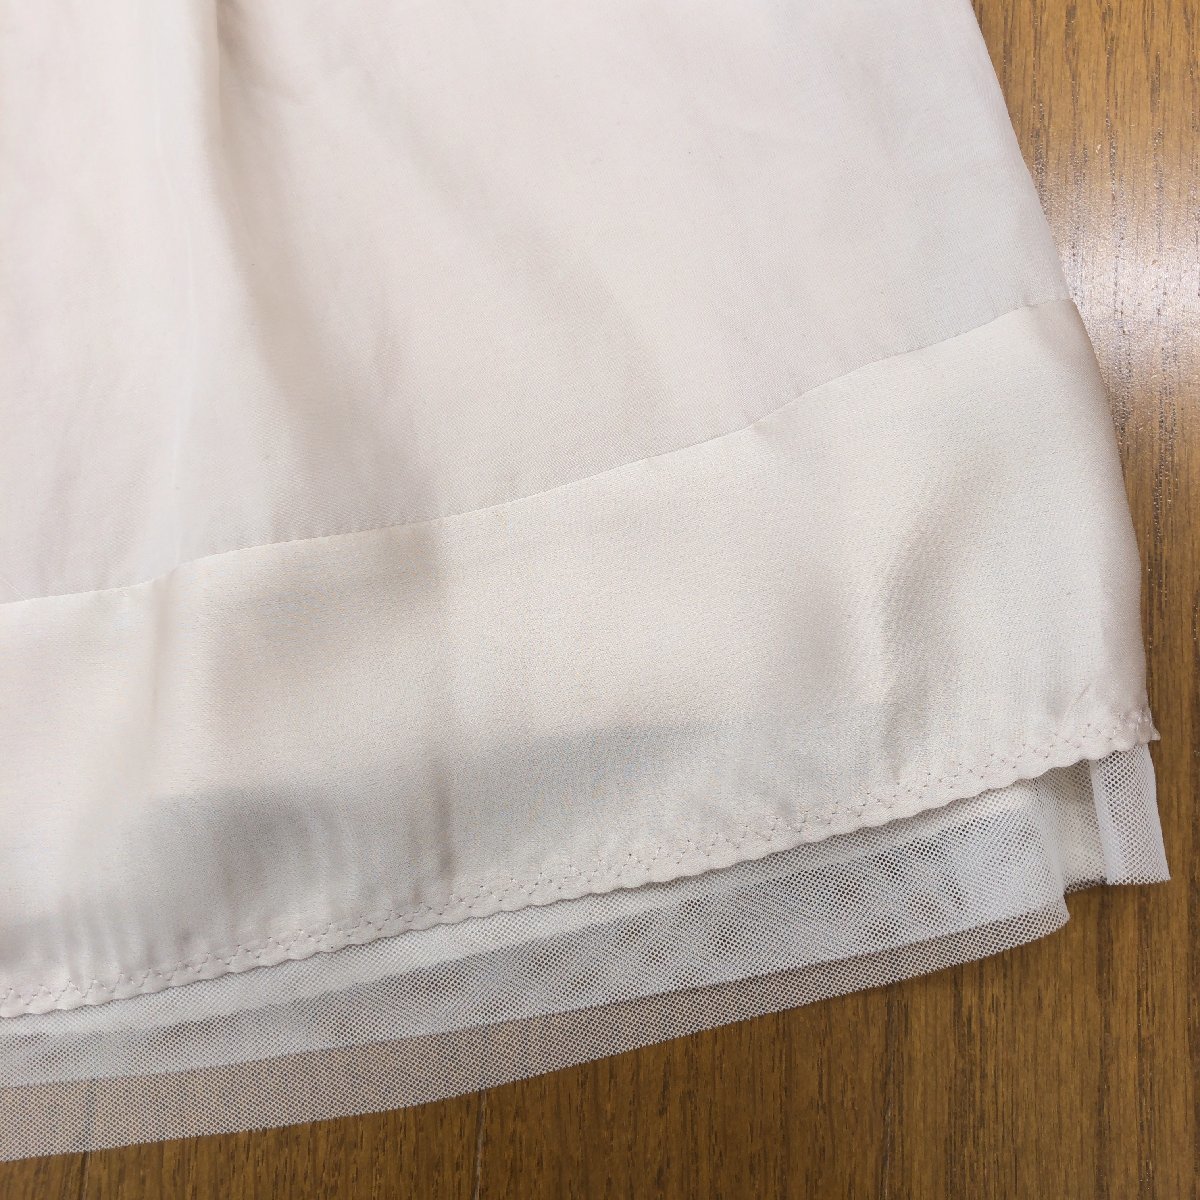 新品 INED イネド レイヤード スカート 9(M) ベージュ 日本製 フレアスカート レディース 女性用 国内正規品 未使用_画像5